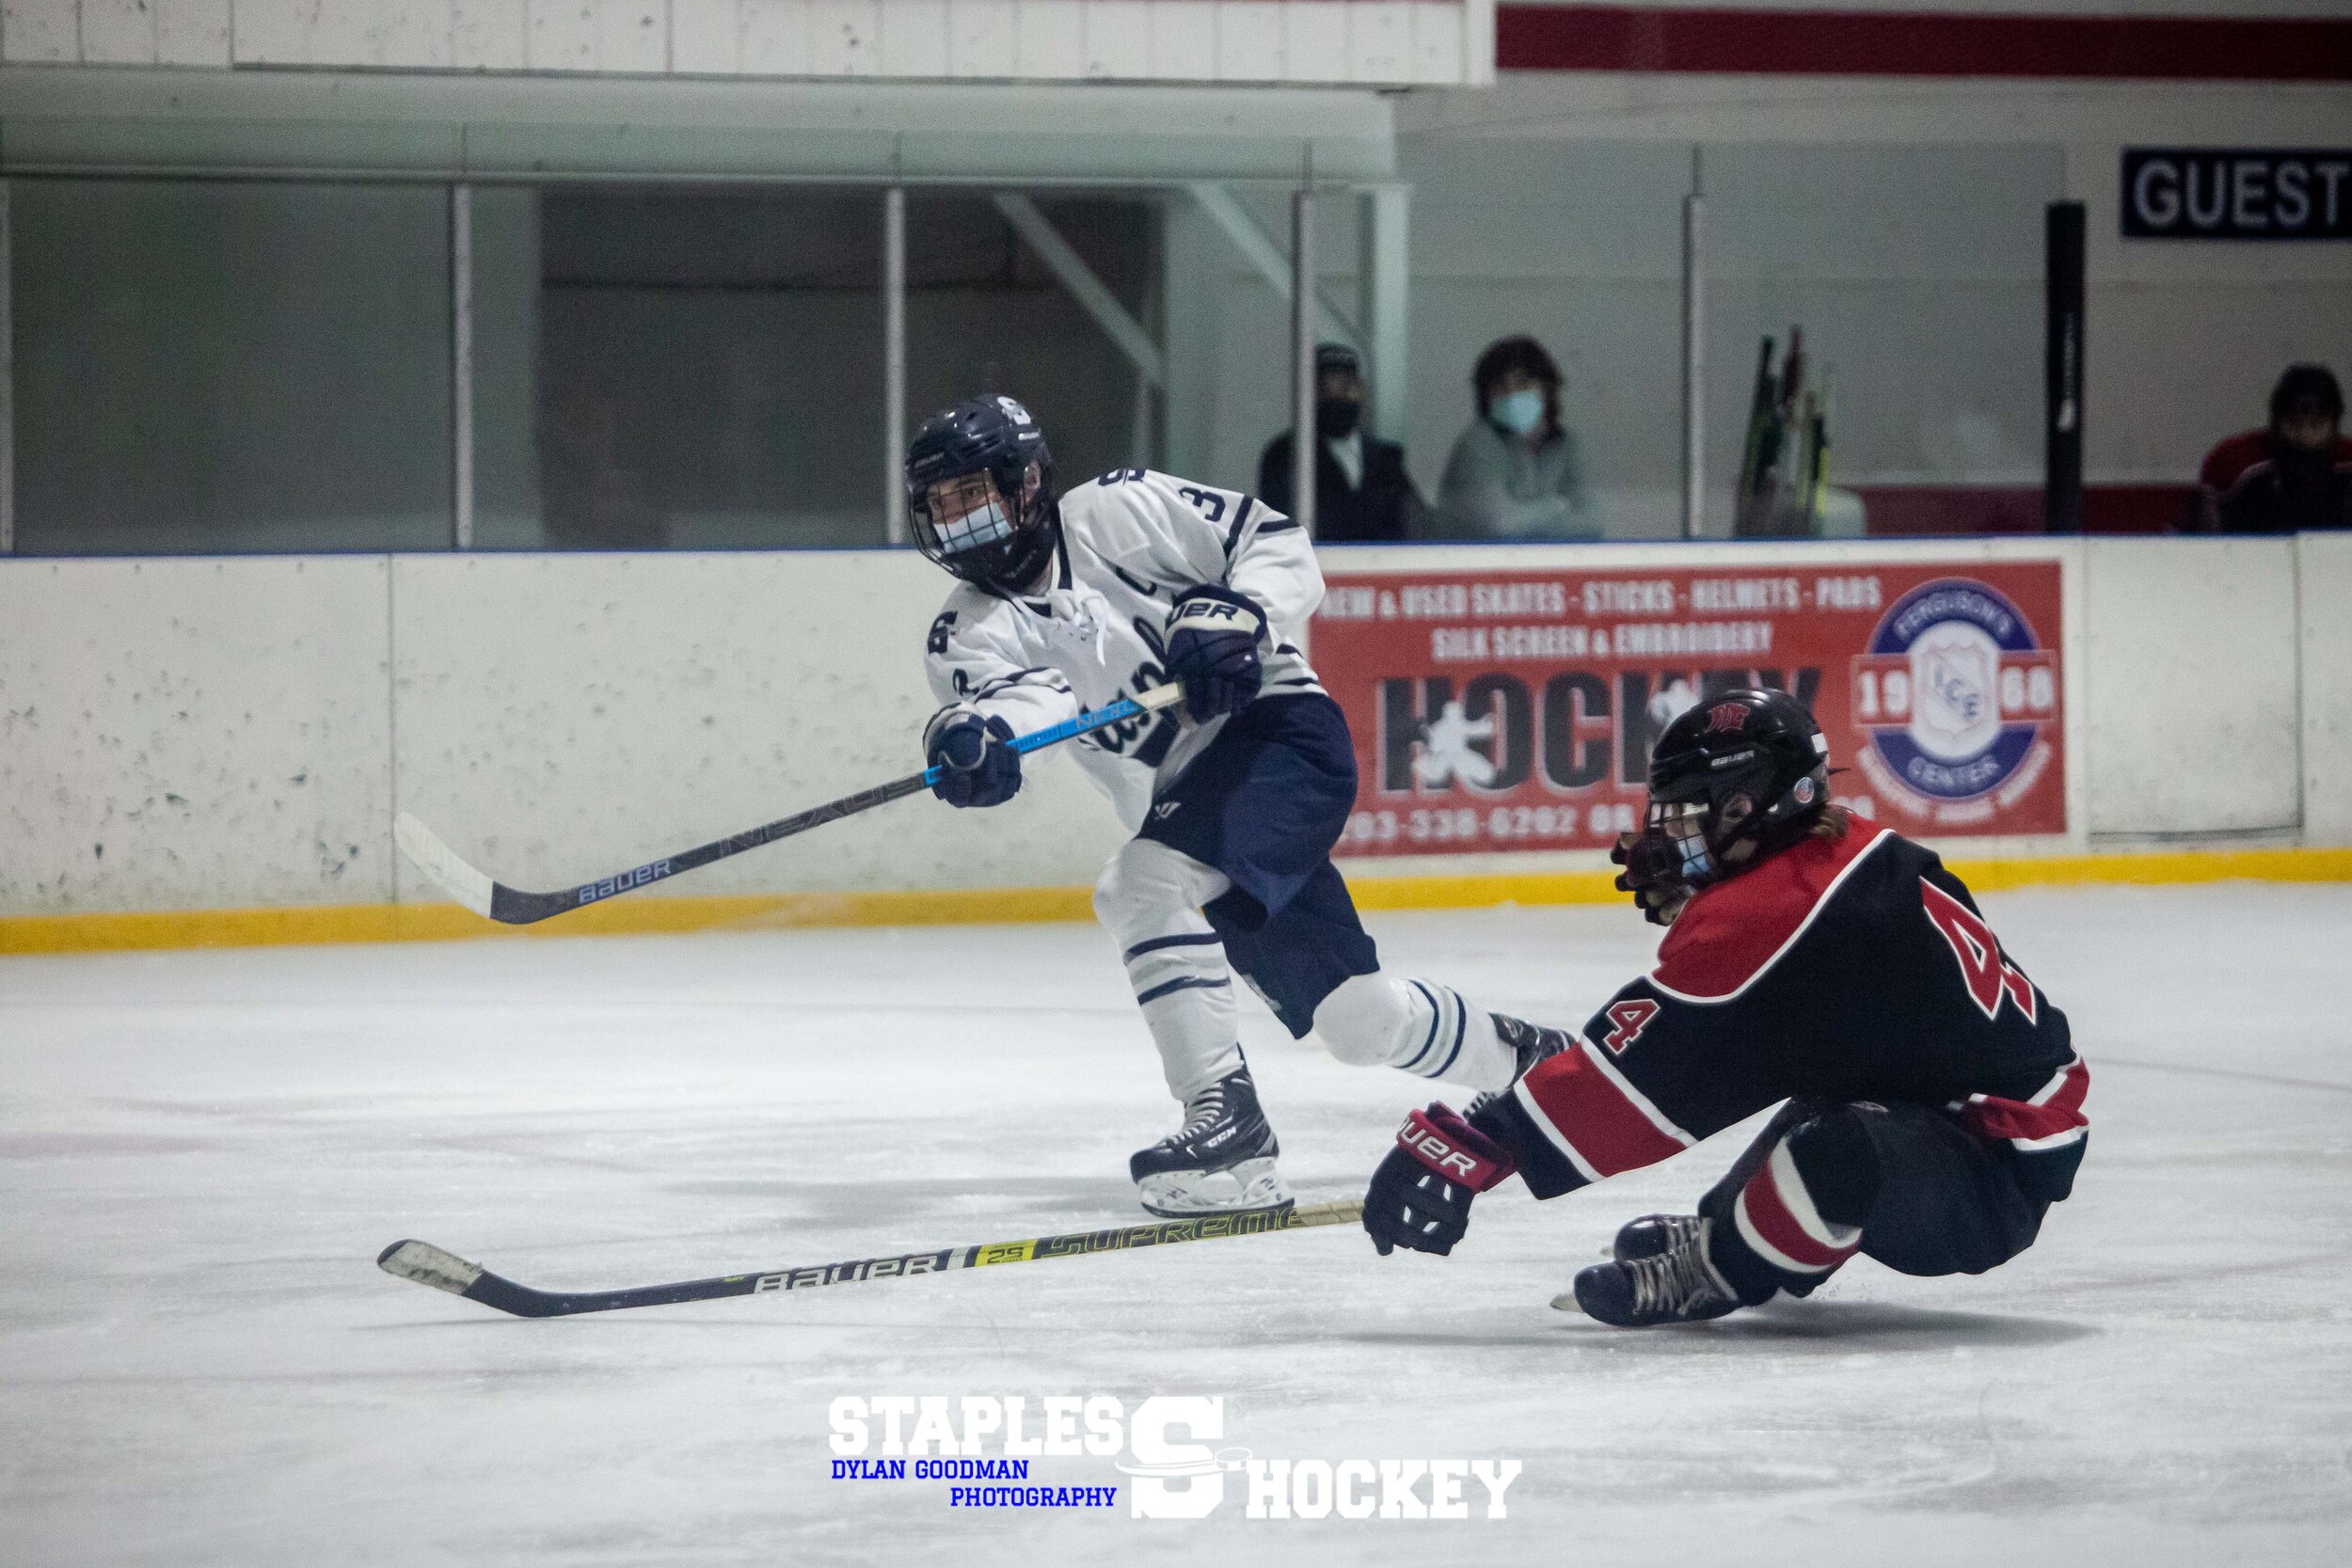 55-Staples Varsity Boys Hockey vs. Masuk - February 27, 2021 - Dylan Goodman Photography.jpg